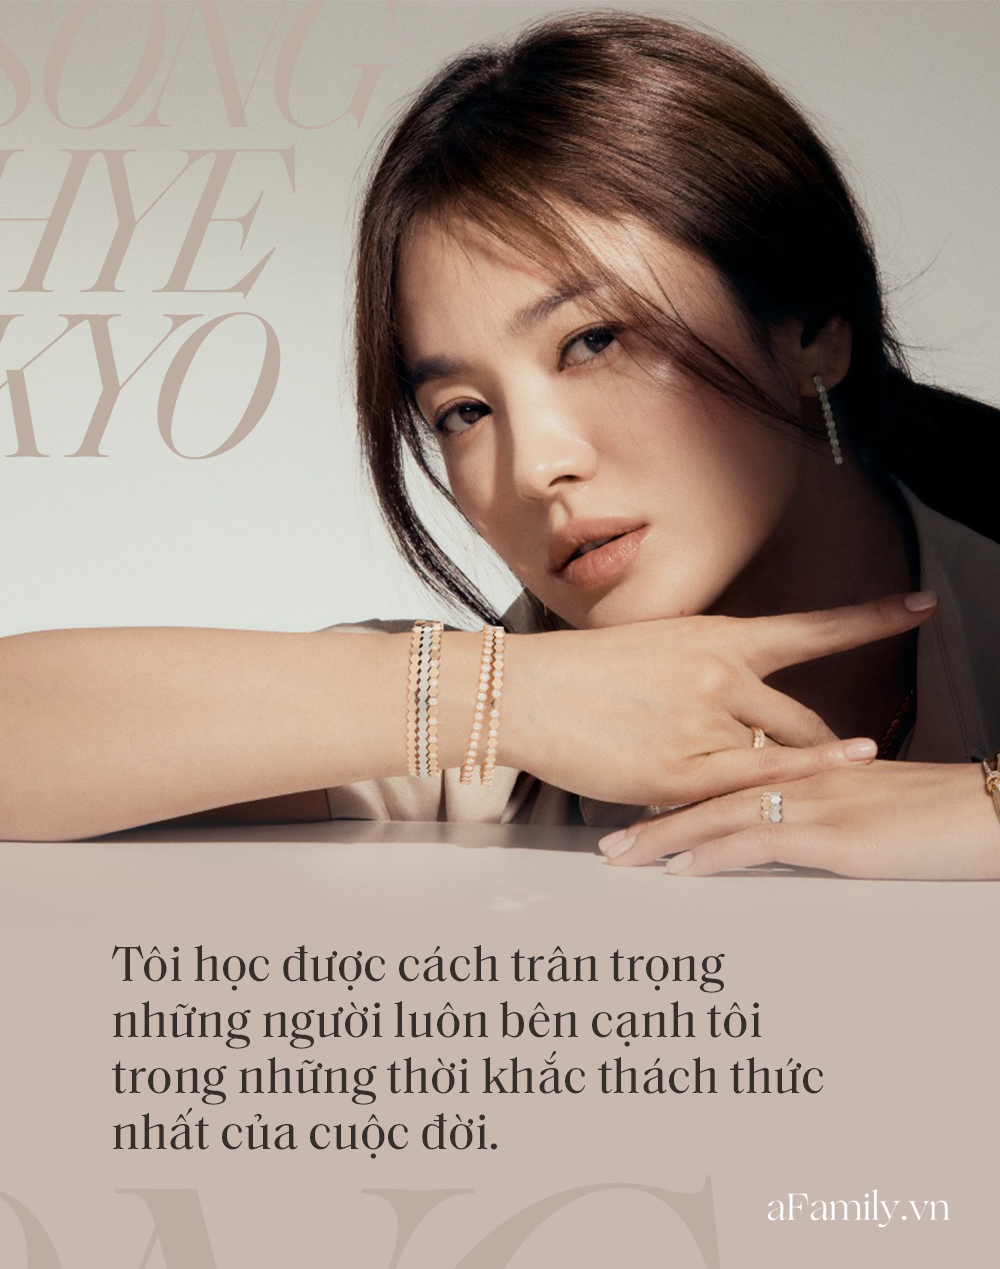 Song Hye Kyo đá xoáy chồng cũ Song Joong Ki trong bài phỏng vấn mới: Nhấn mạnh sự &quot;phức tạp&quot; tới 3 lần, khẳng định tình yêu phải được giữ gìn từ hai phía? - Ảnh 2.